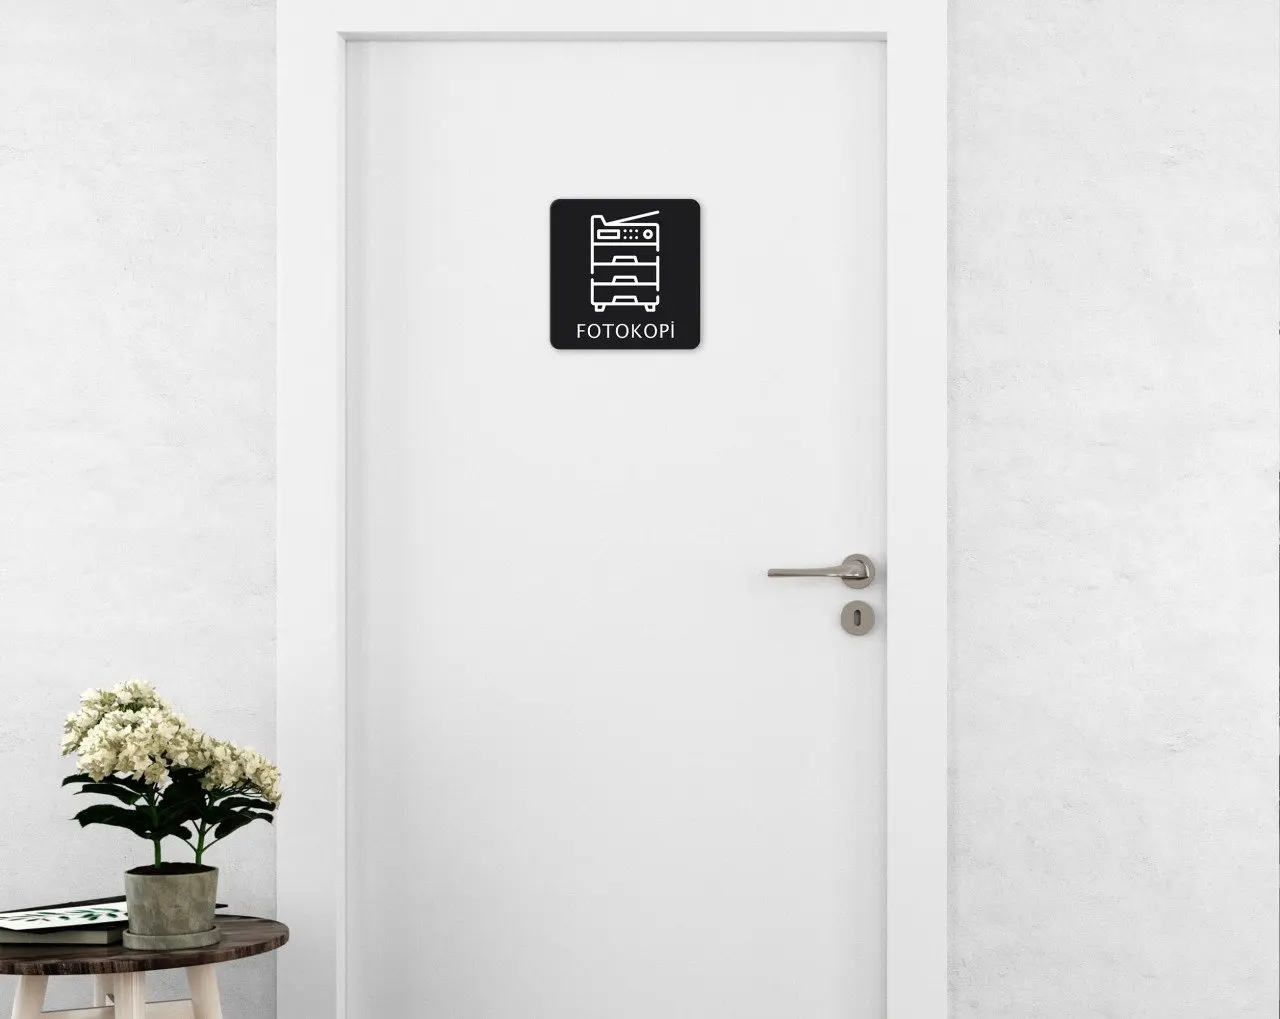 

BK дверная перегородка для домашнего копировального аппарата, современное удобное надежное украшение, подарок, качественный дизайн, просто...